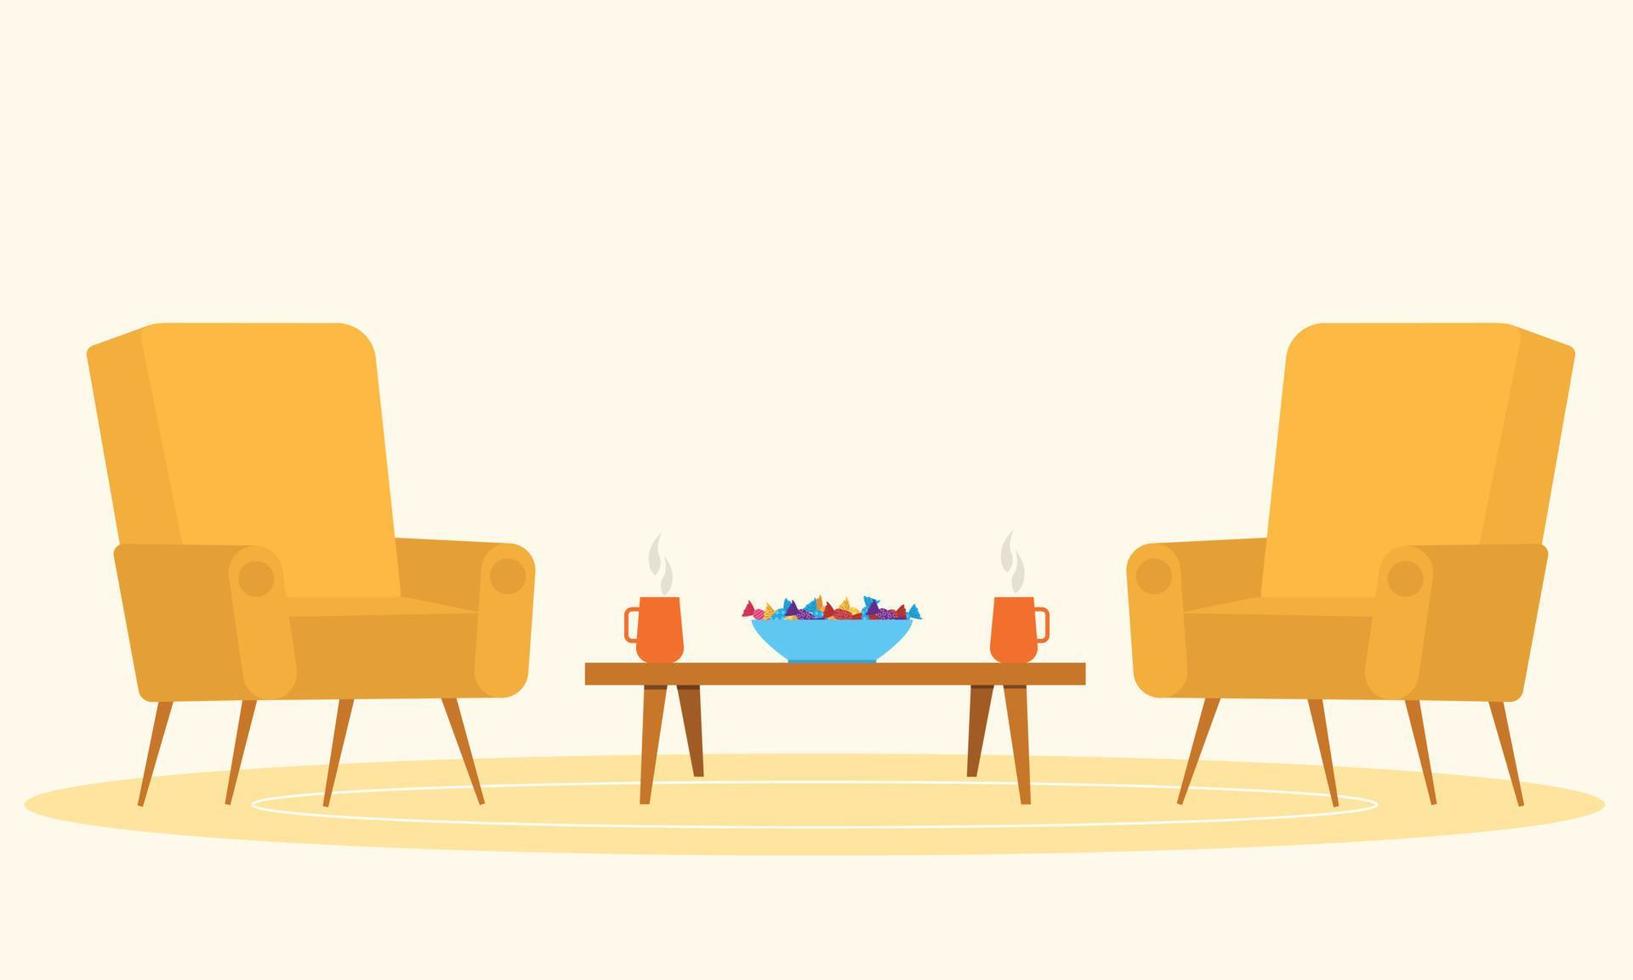 två gul fåtölj och liten tabell med två kopp och godis. mysigt levande rum vektor illustration.